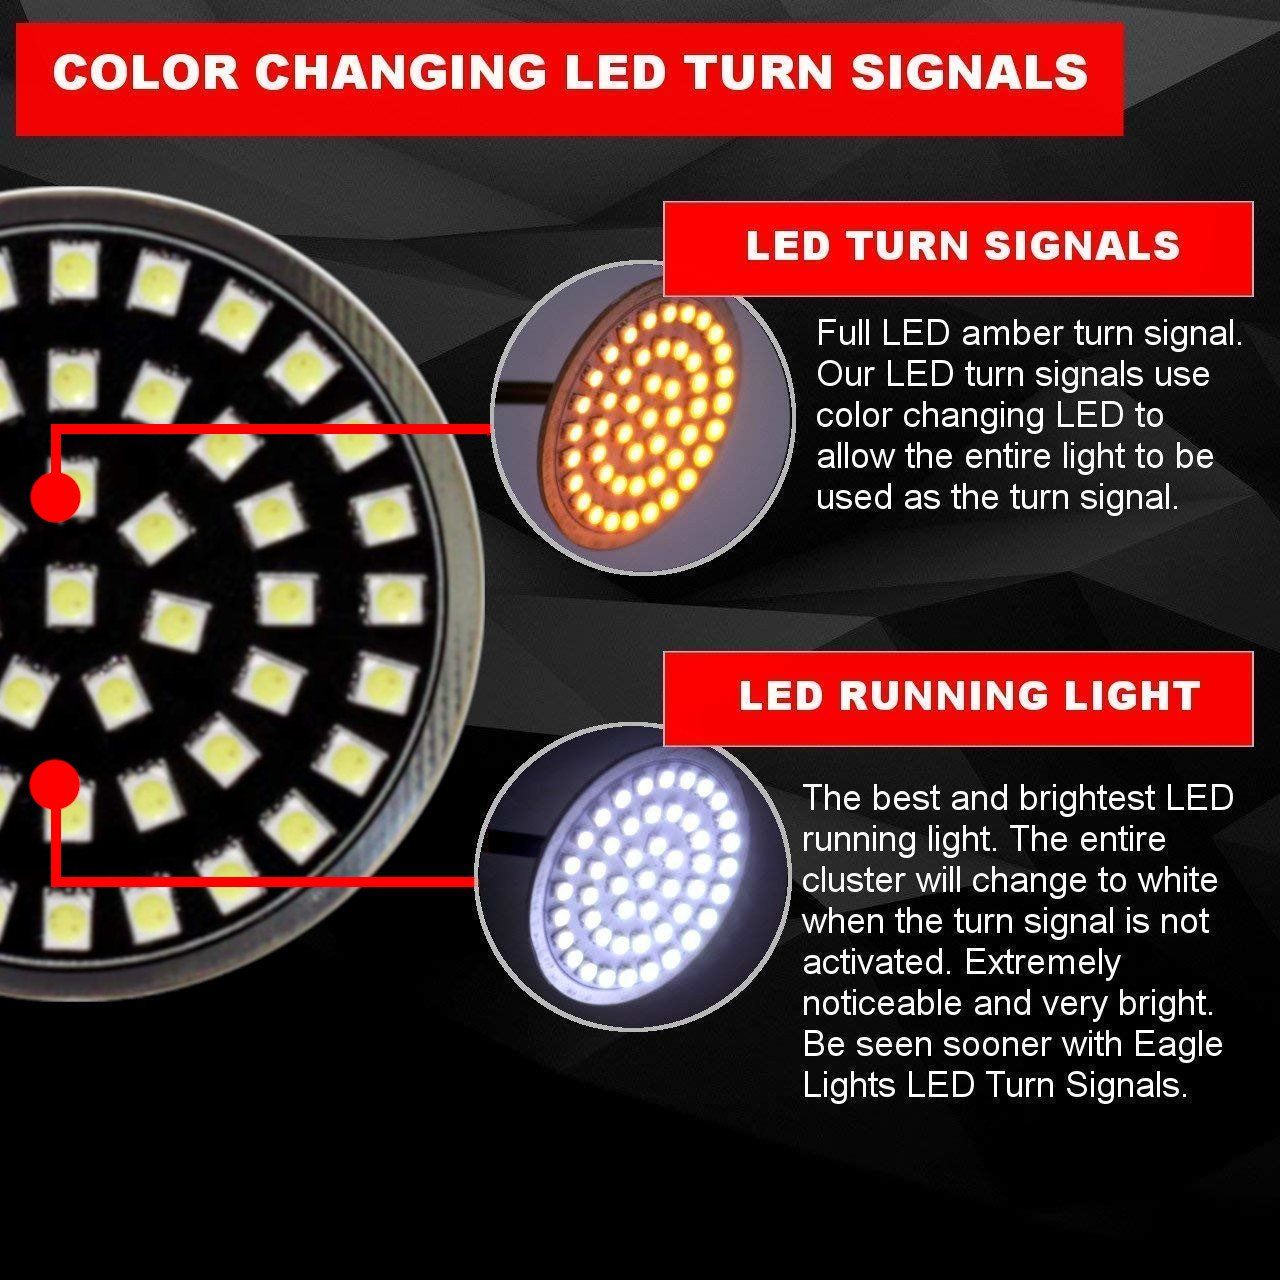 2” LED Front Turn Signals - Eagle Lights Generation II Midnight Edition Front LED Turn Signals